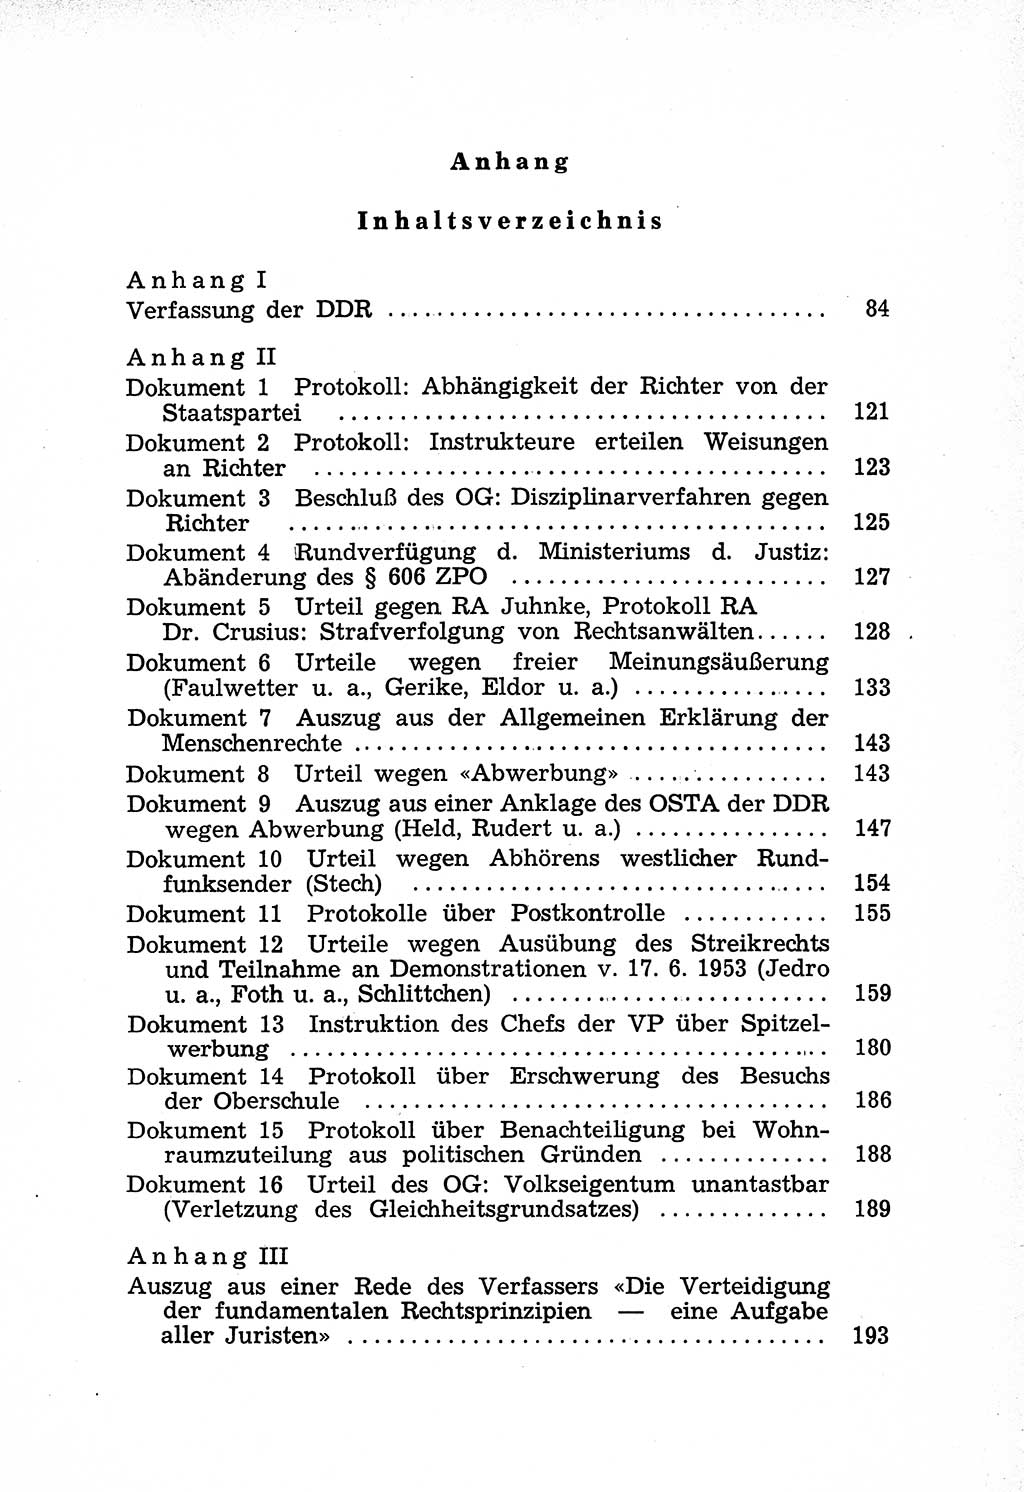 Rechtsstaat in zweierlei Hinsicht, Untersuchungsausschuß freiheitlicher Juristen (UfJ) [Bundesrepublik Deutschland (BRD)] 1956, Seite 209 (R.-St. UfJ BRD 1956, S. 209)